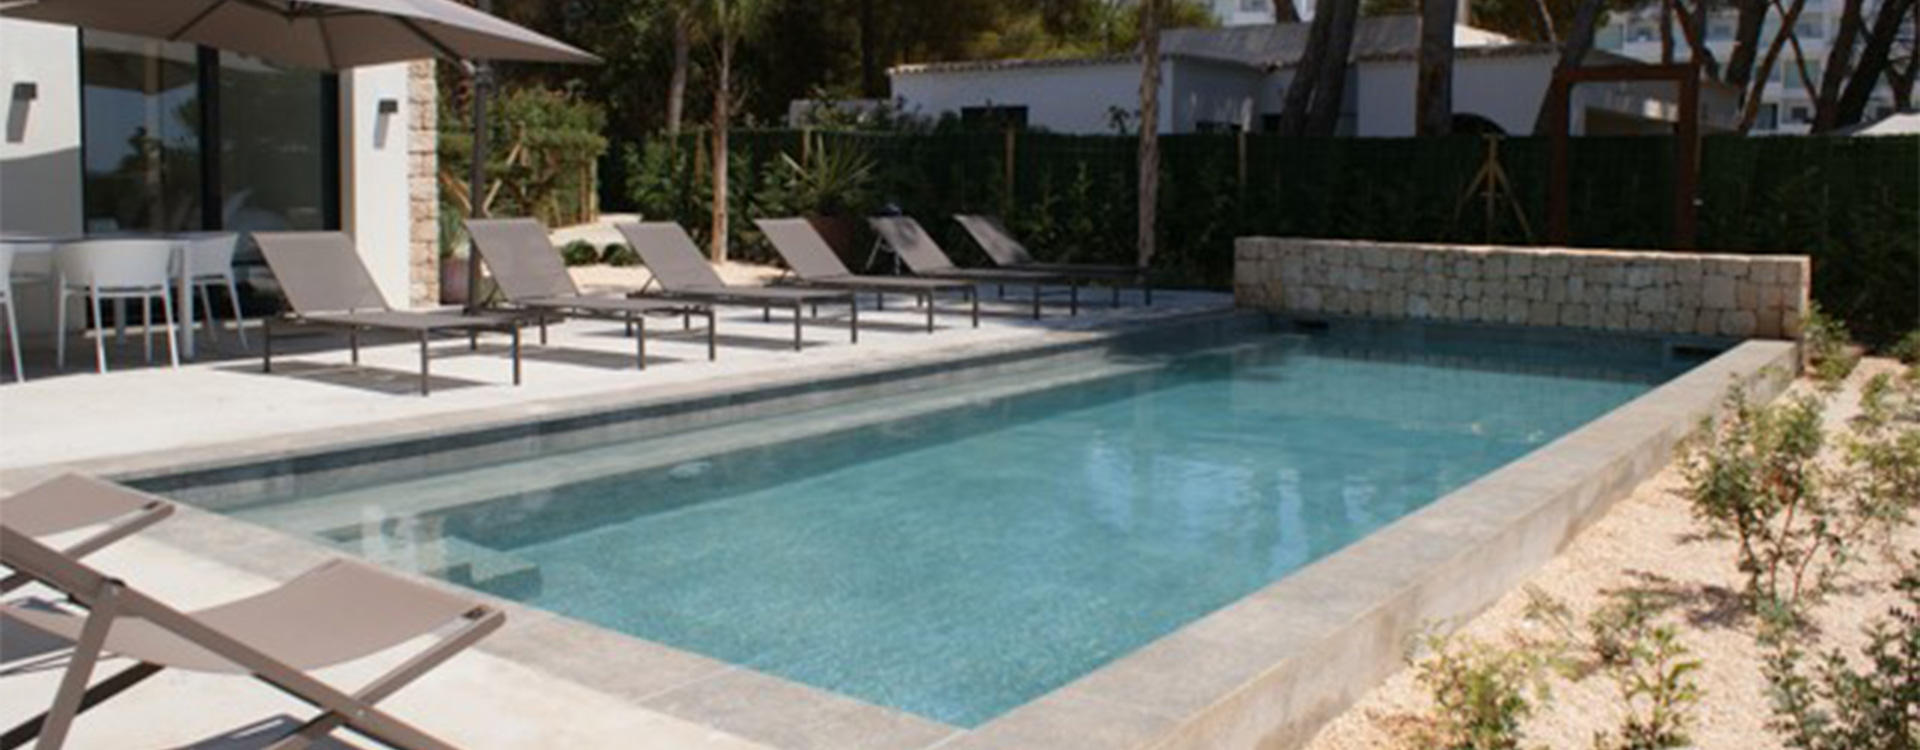 Villa Algarrobos te huur op ibiza - zwembad